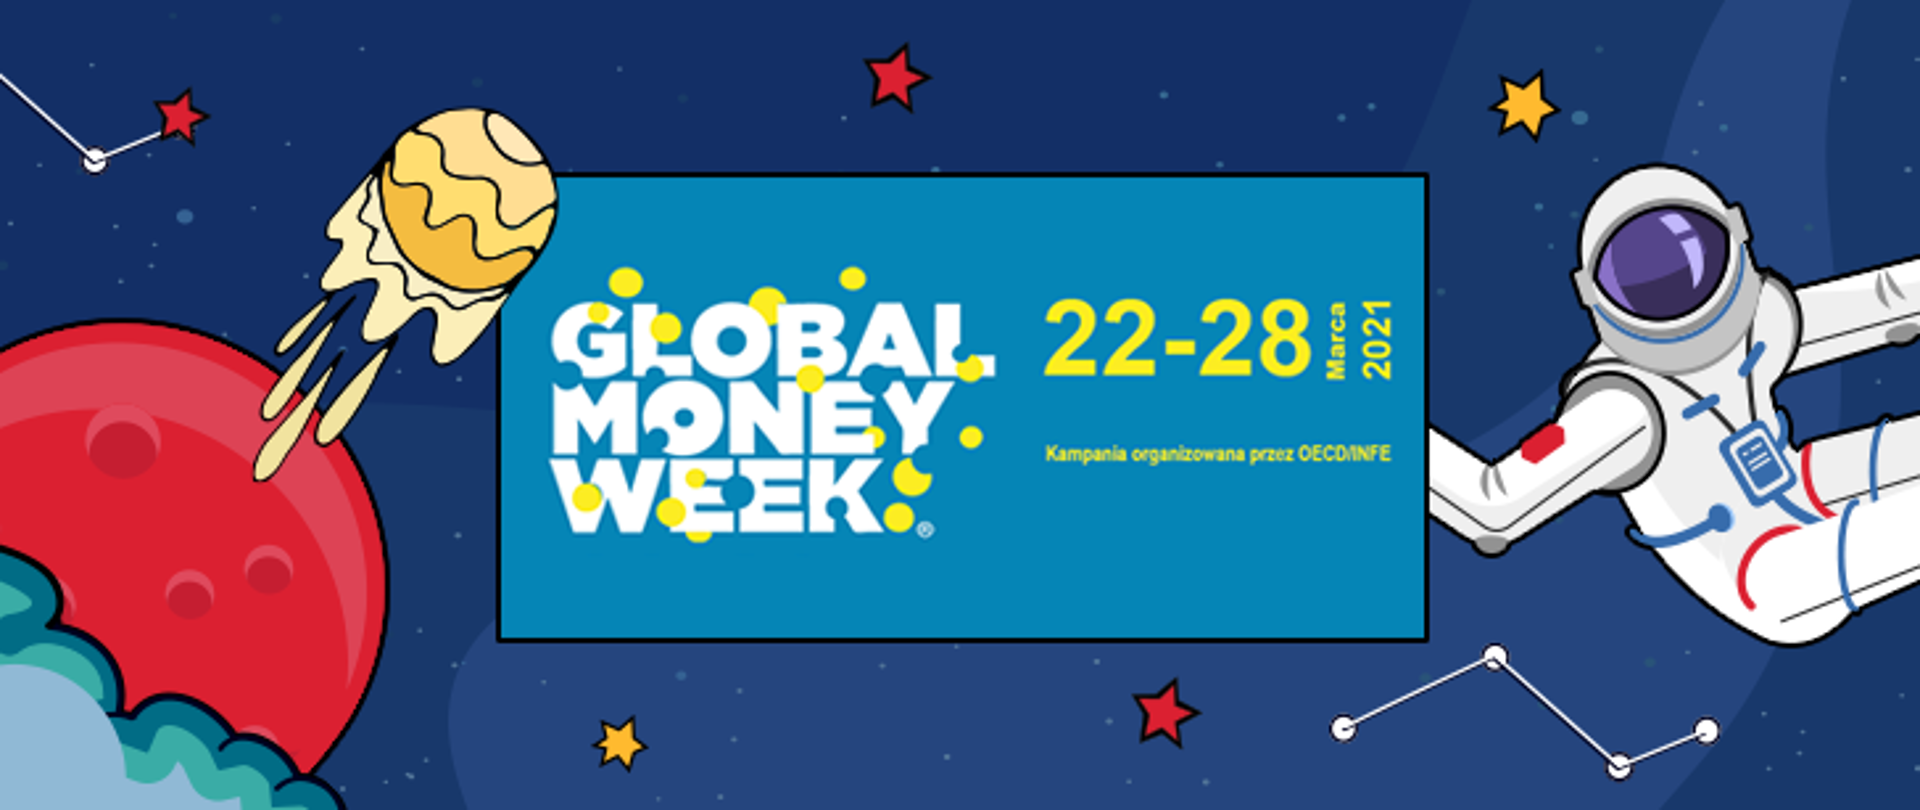 Napis Global Money Week 22-28.03.2021 Kampania organizowana przez OECD i UKNF